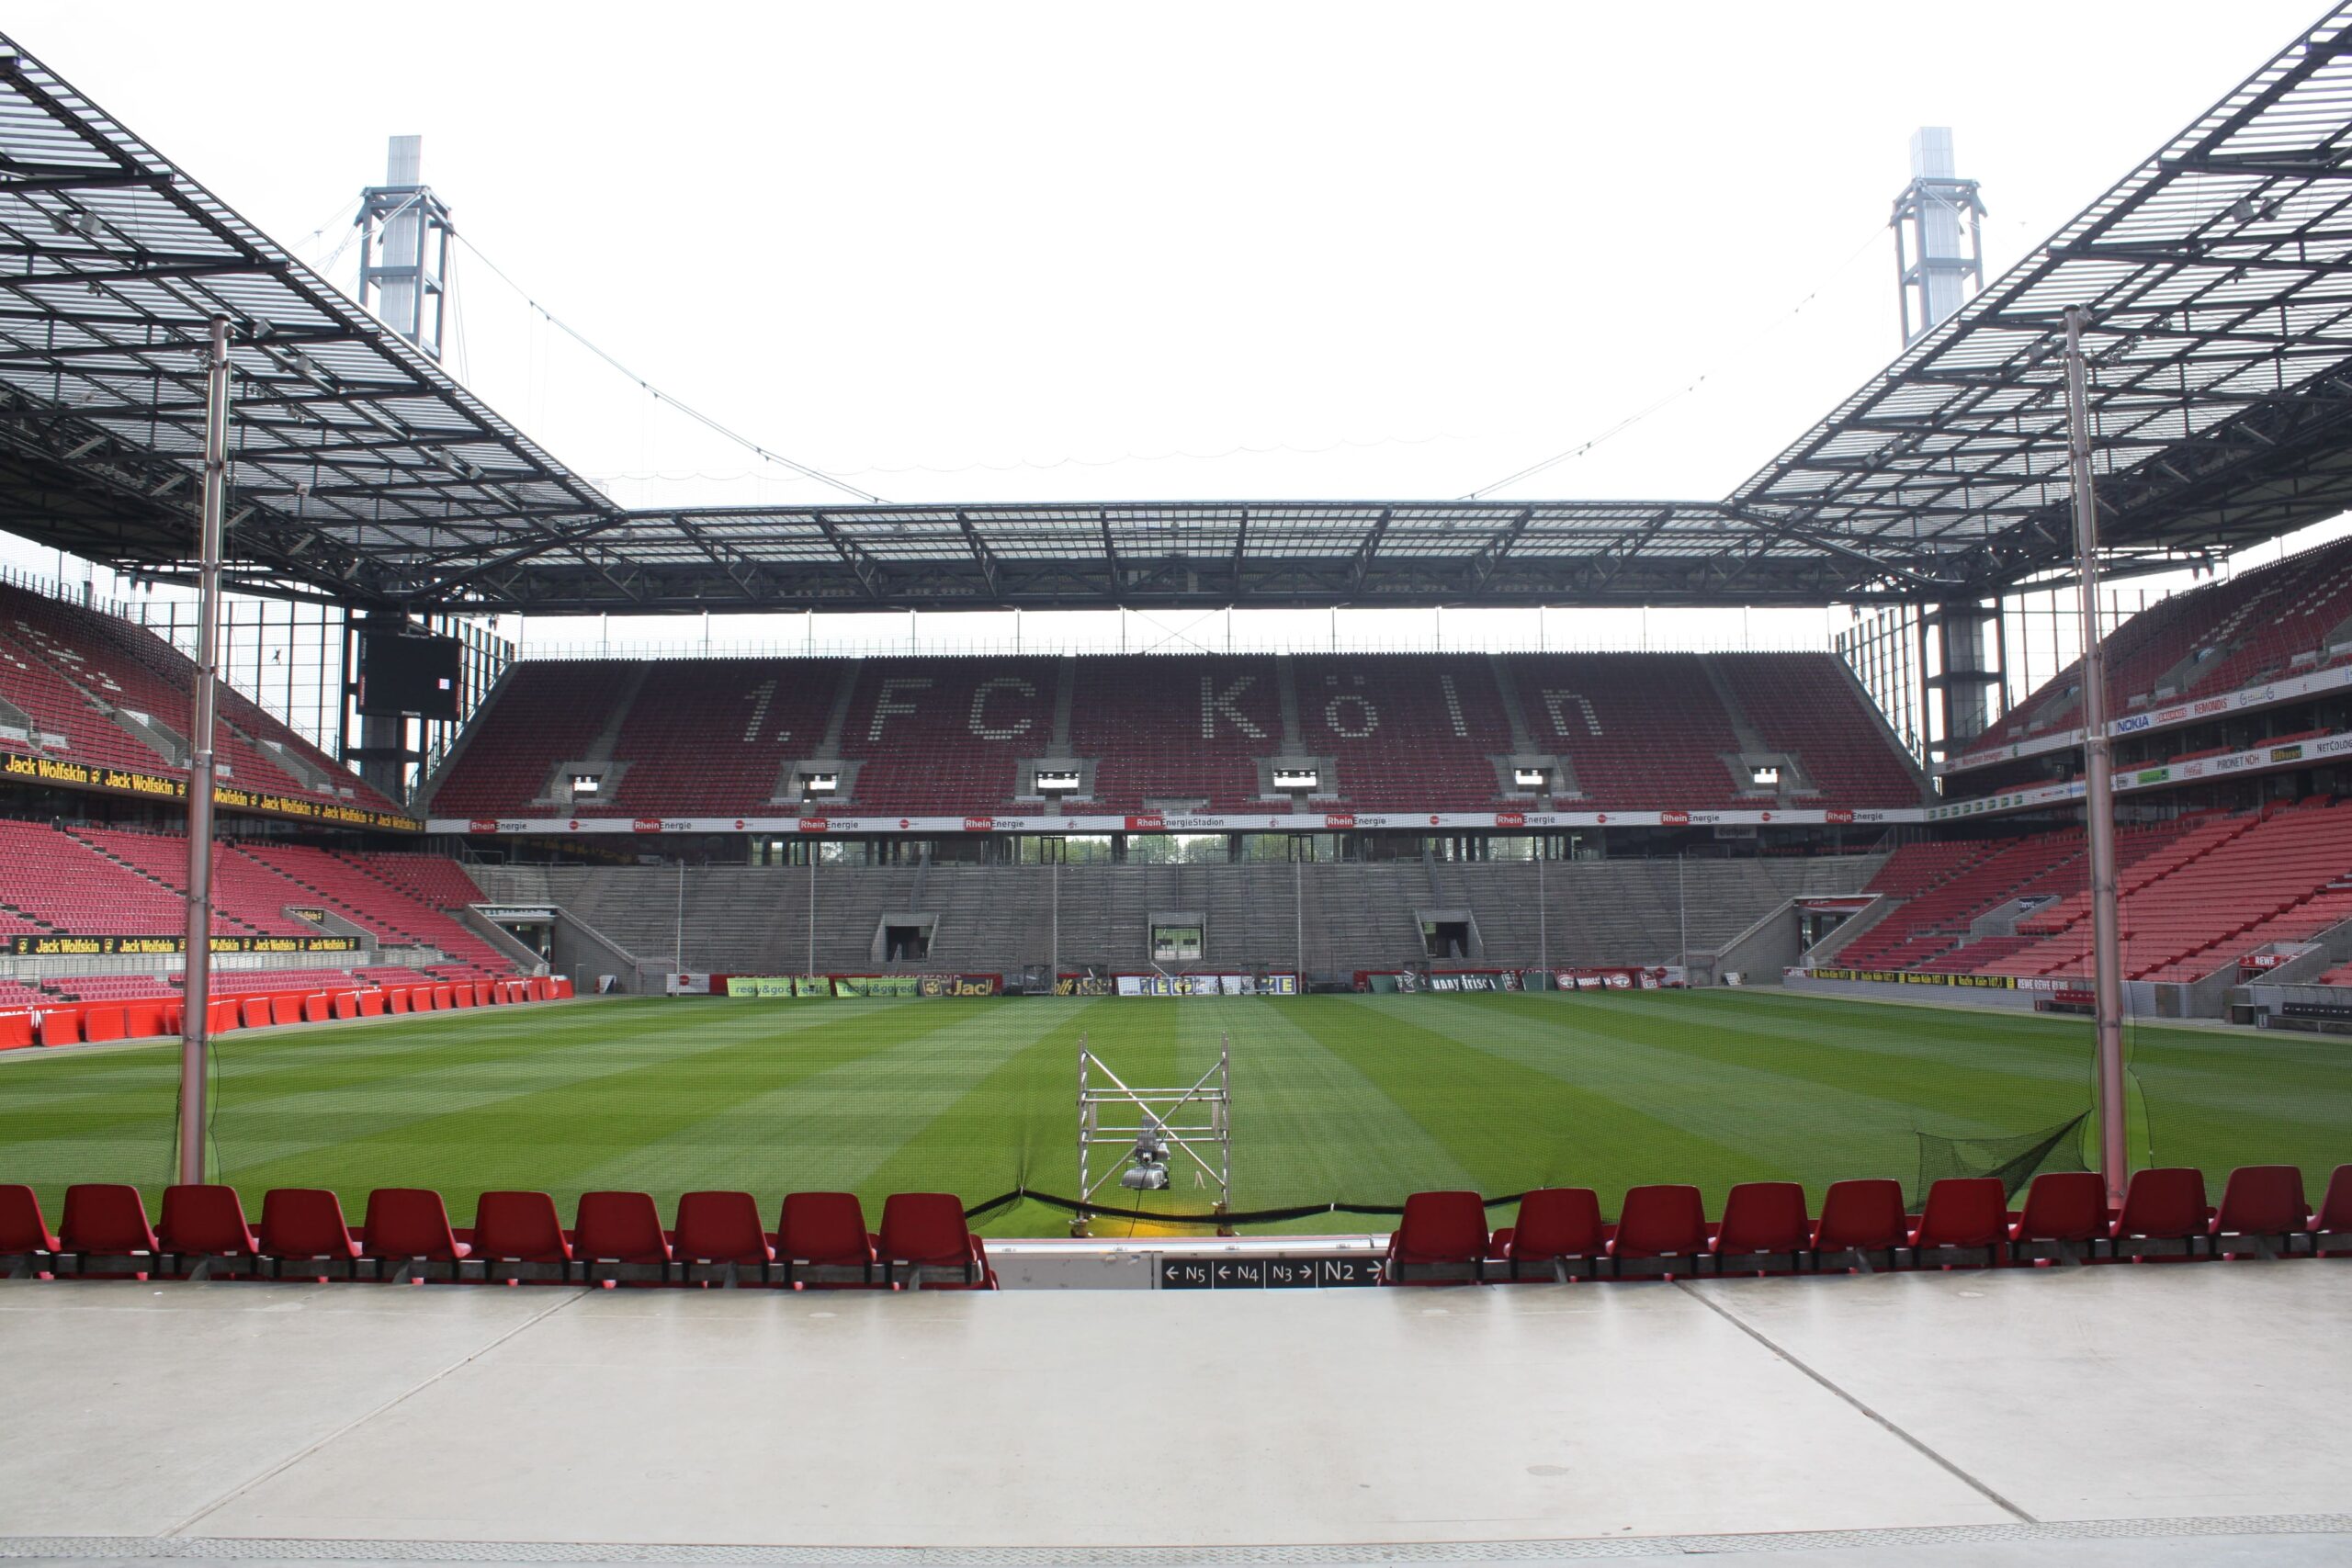 Rhein Energie voetbalstadion keulen